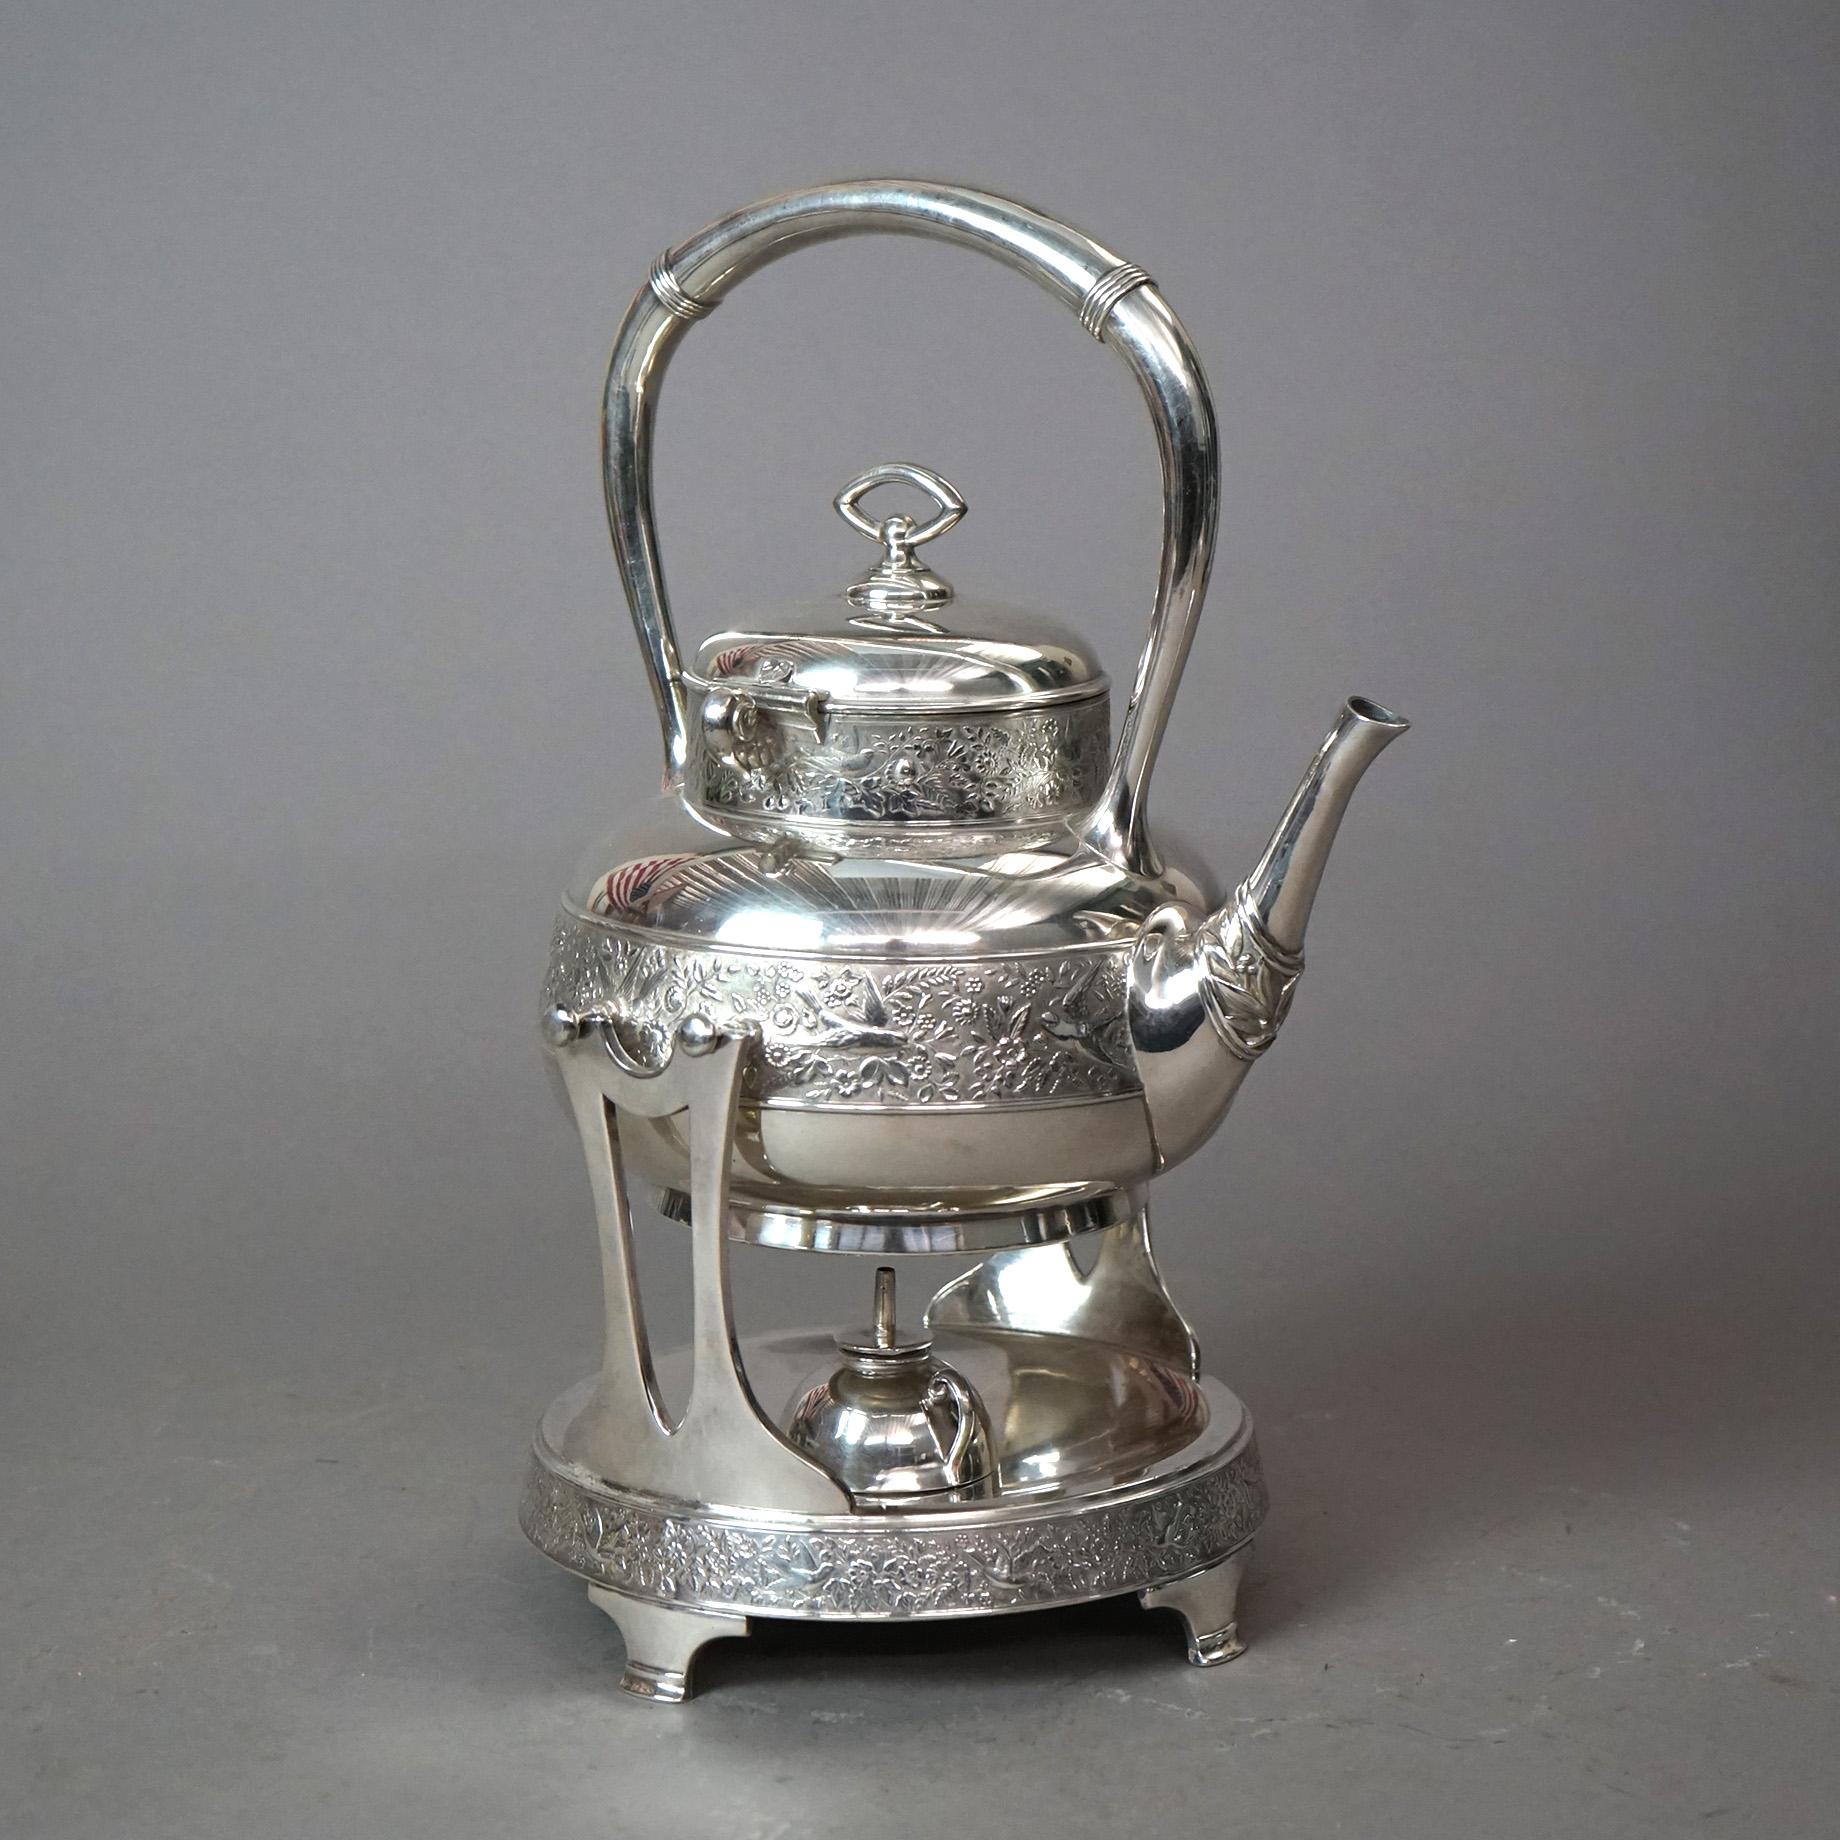 Eine antike Aesthetic Teekanne von Rogers bietet Silber Platte Konstruktion mit Kippen Teekanne mit geprägten Vogel und Blatt-Design, sitzt auf Heizung stehen, c1870

Maße - 14,5 